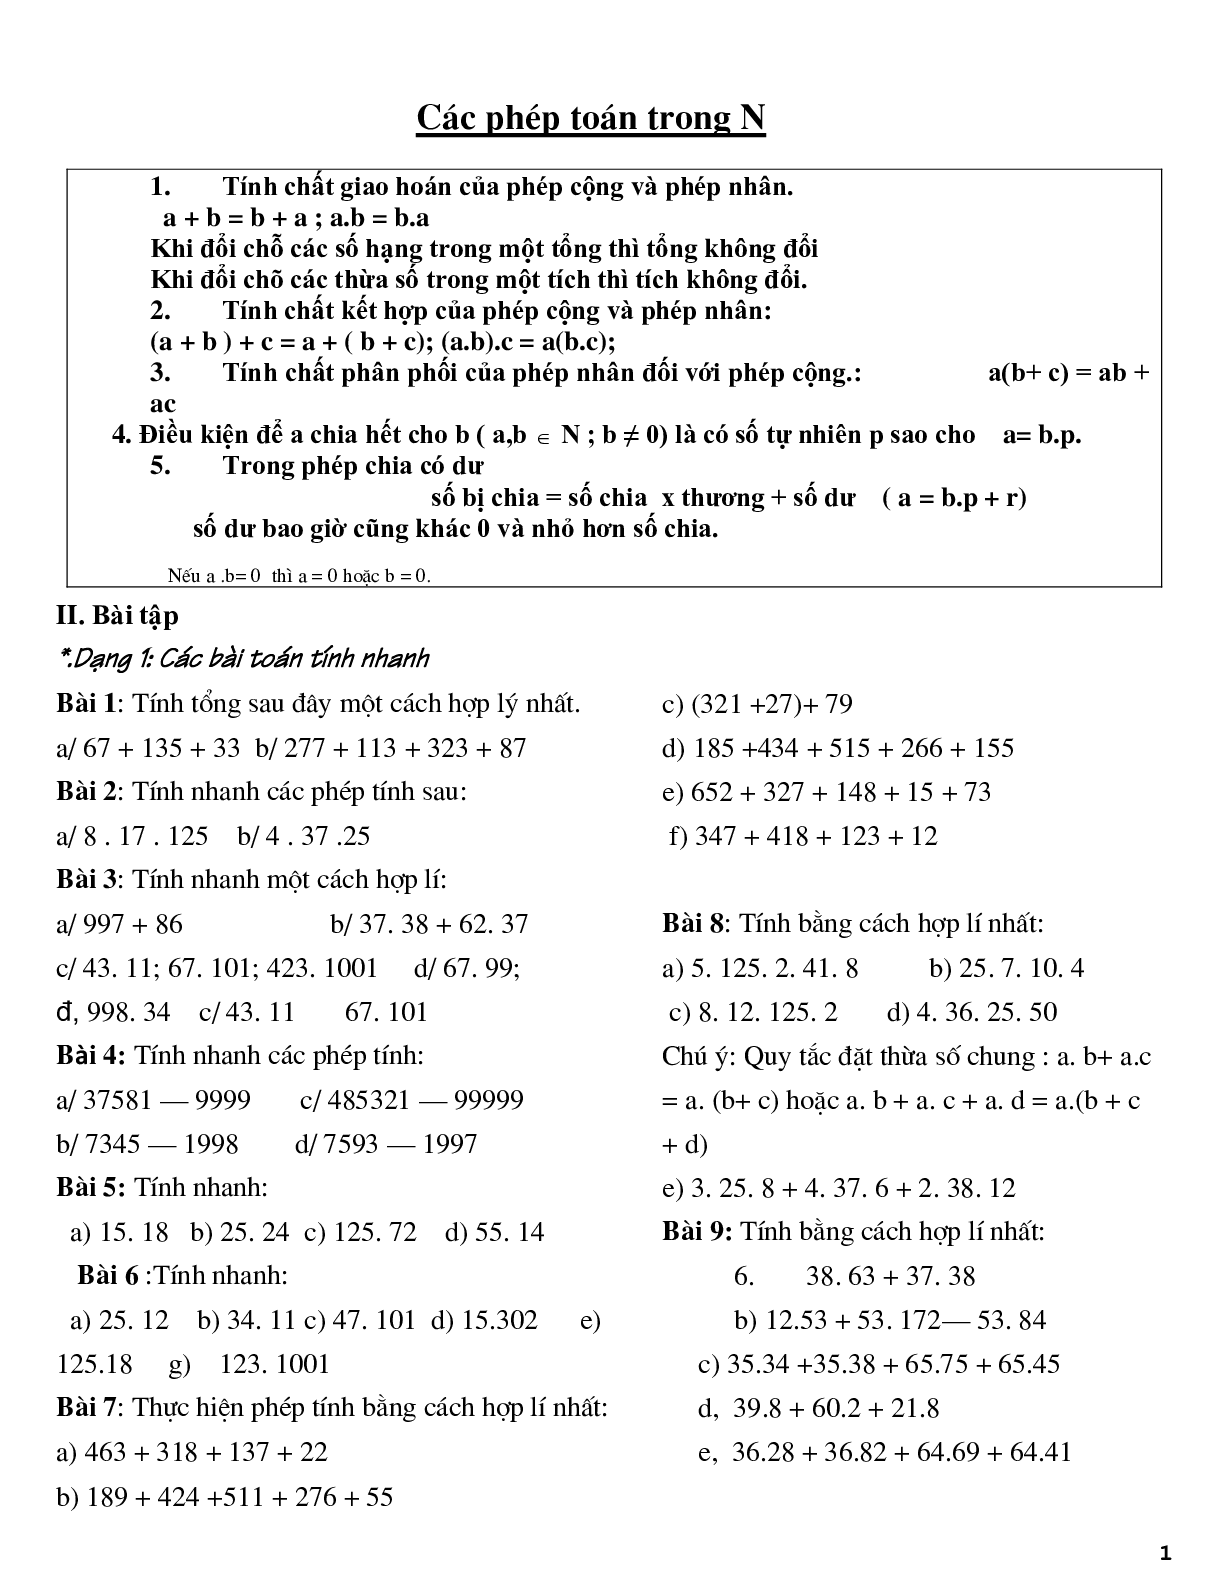 Các phép toán trong N (trang 1)